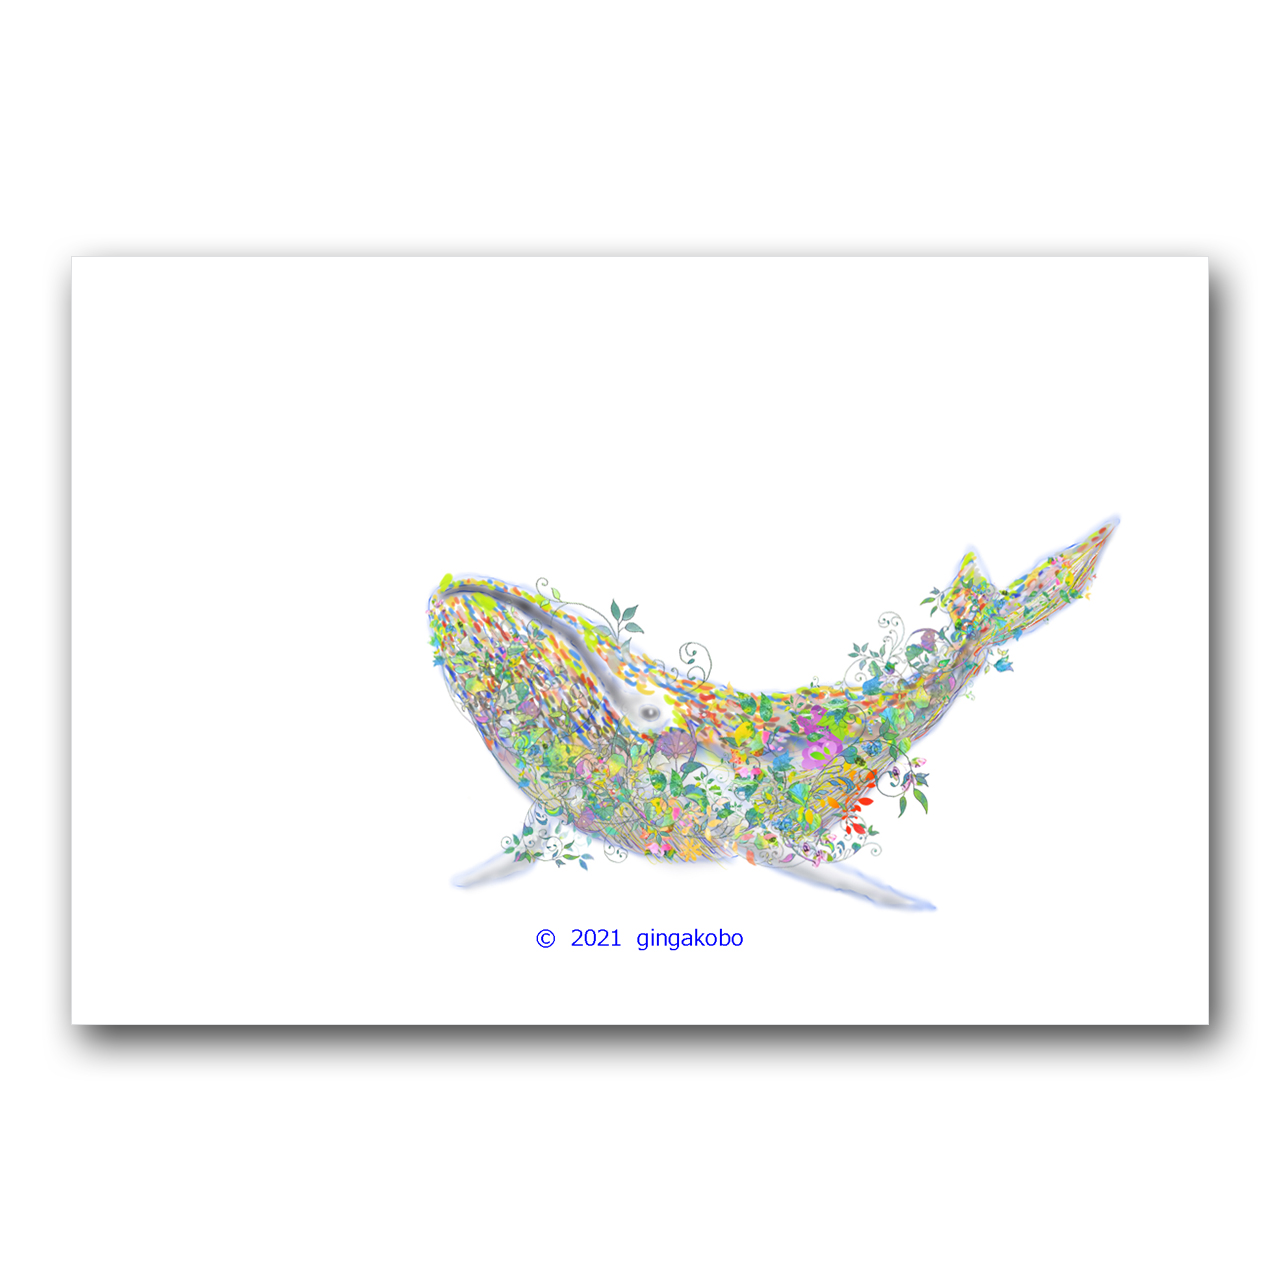 サヨナラをくぐり抜けてクジラになる 鯨 くじら ほっこり癒しのイラストポストカード2枚組no 1381 Iichi ハンドメイド クラフト作品 手仕事品の通販